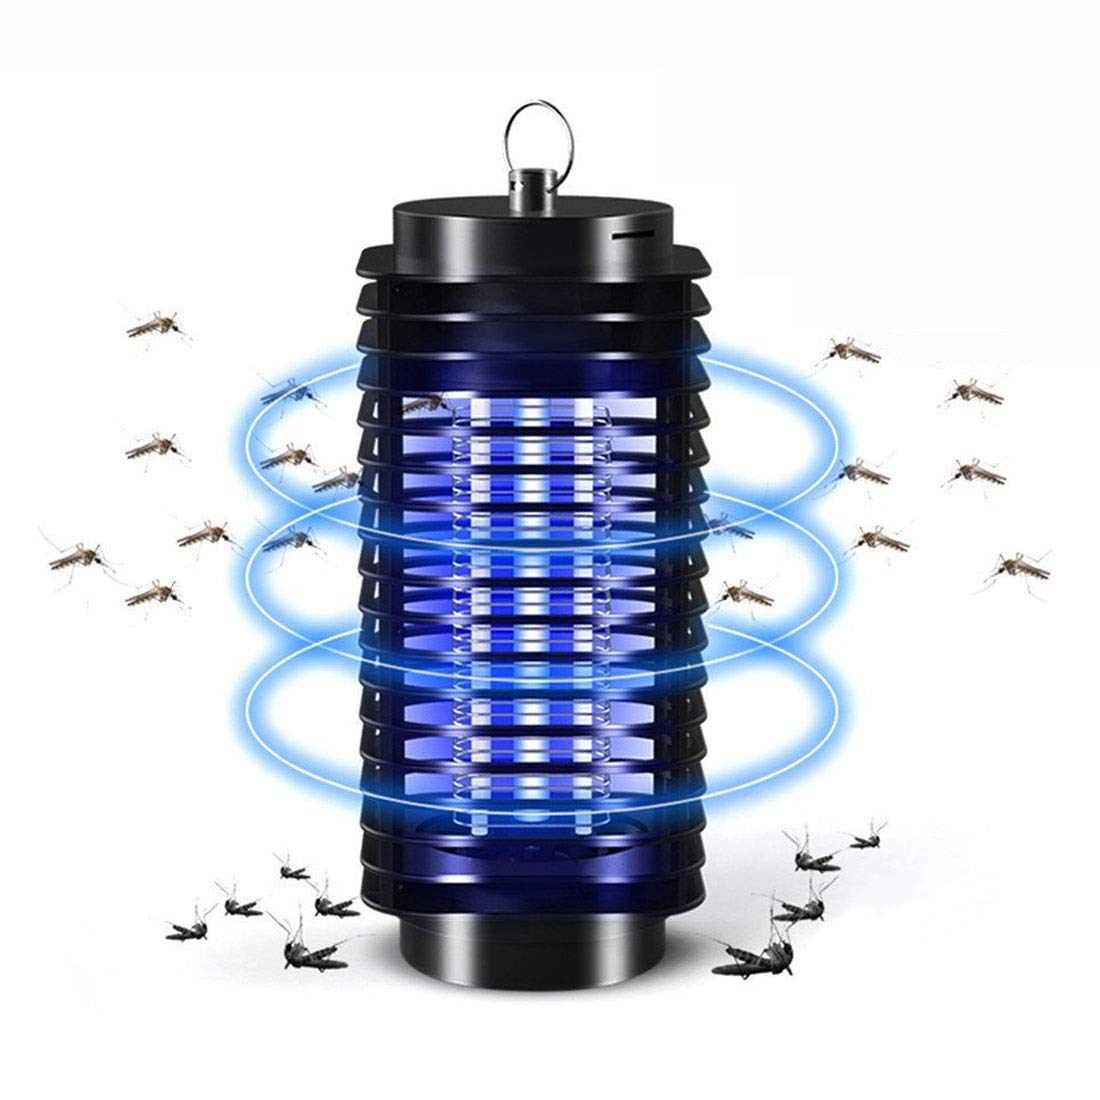 4000 V leistungsstarker elektrischer Mückenvernichter, Fliege, Mückenfalle mit 1.500 m2. Feet Range und 18 W UVA-Moskito-M?rderbirne